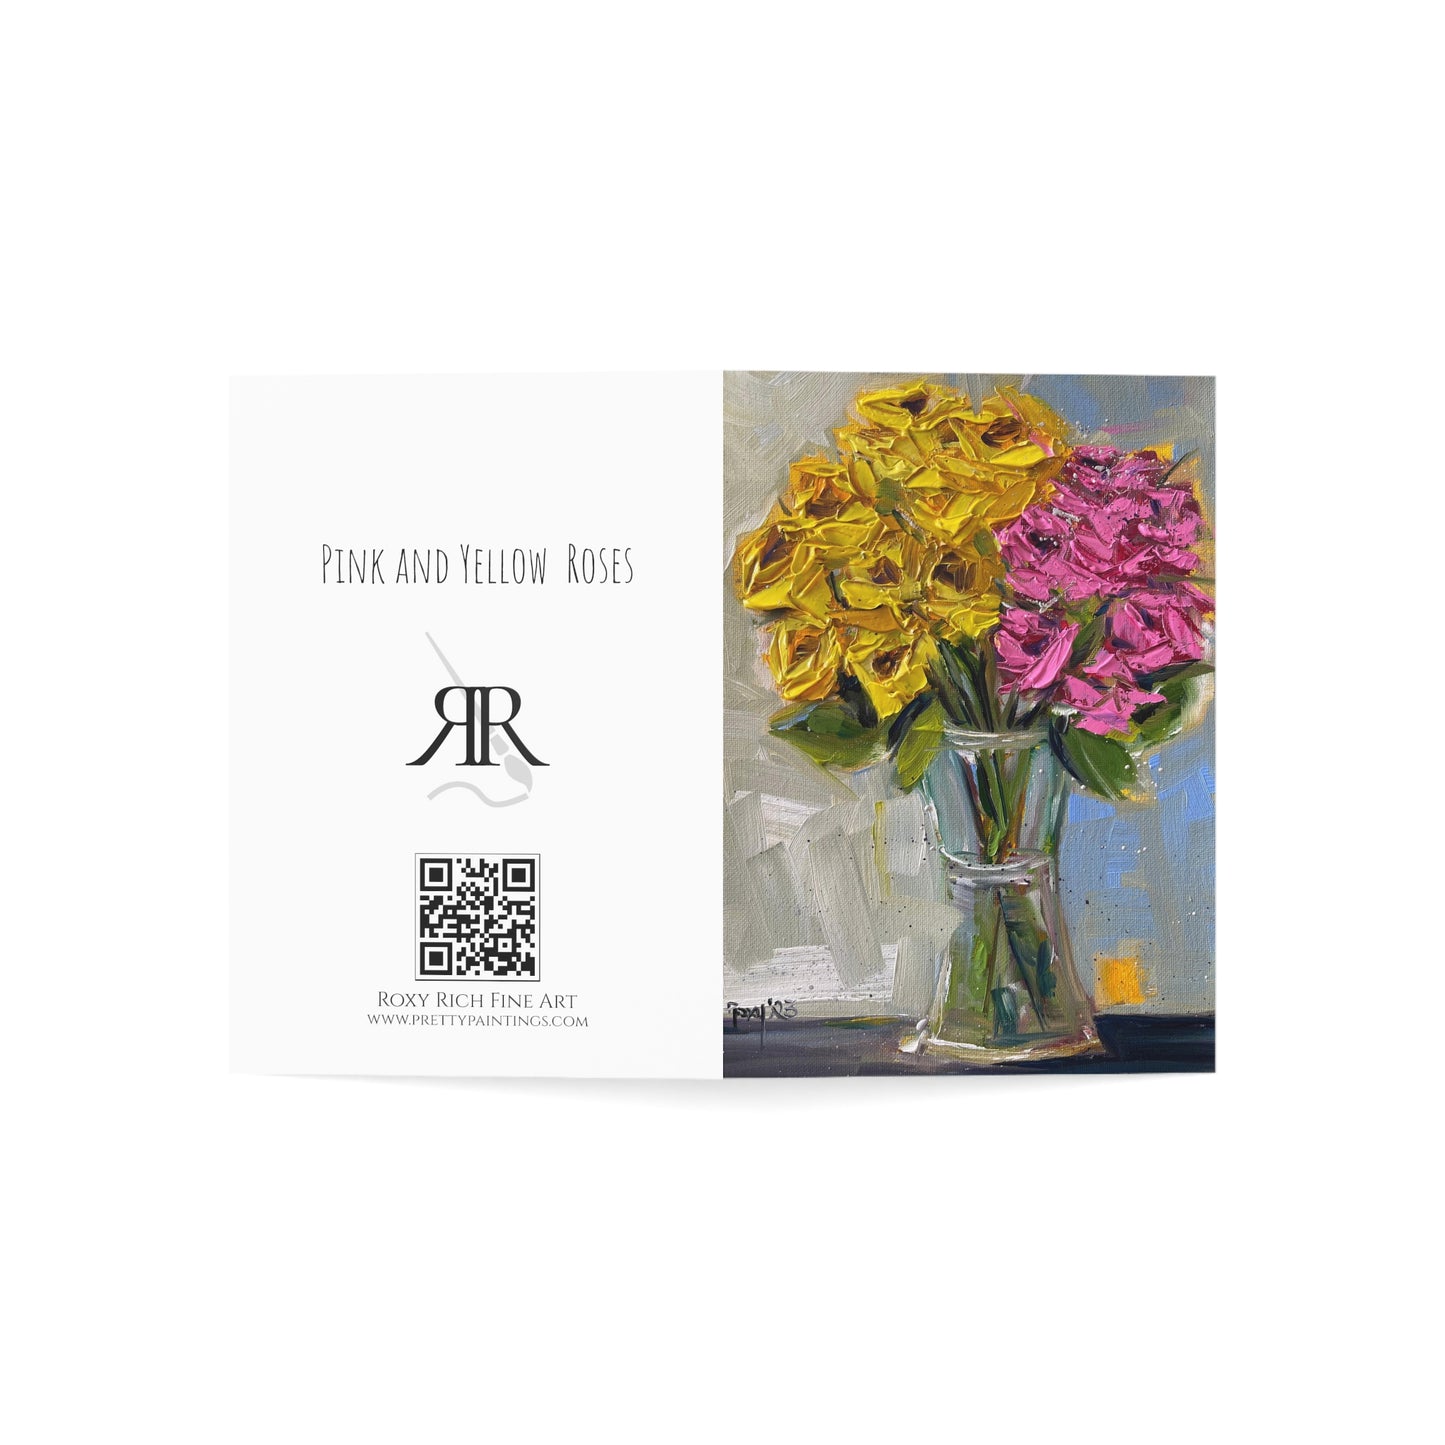 Roses roses et jaunes – Bonne fête des mères (avec sentiment) Cartes de vœux pliées